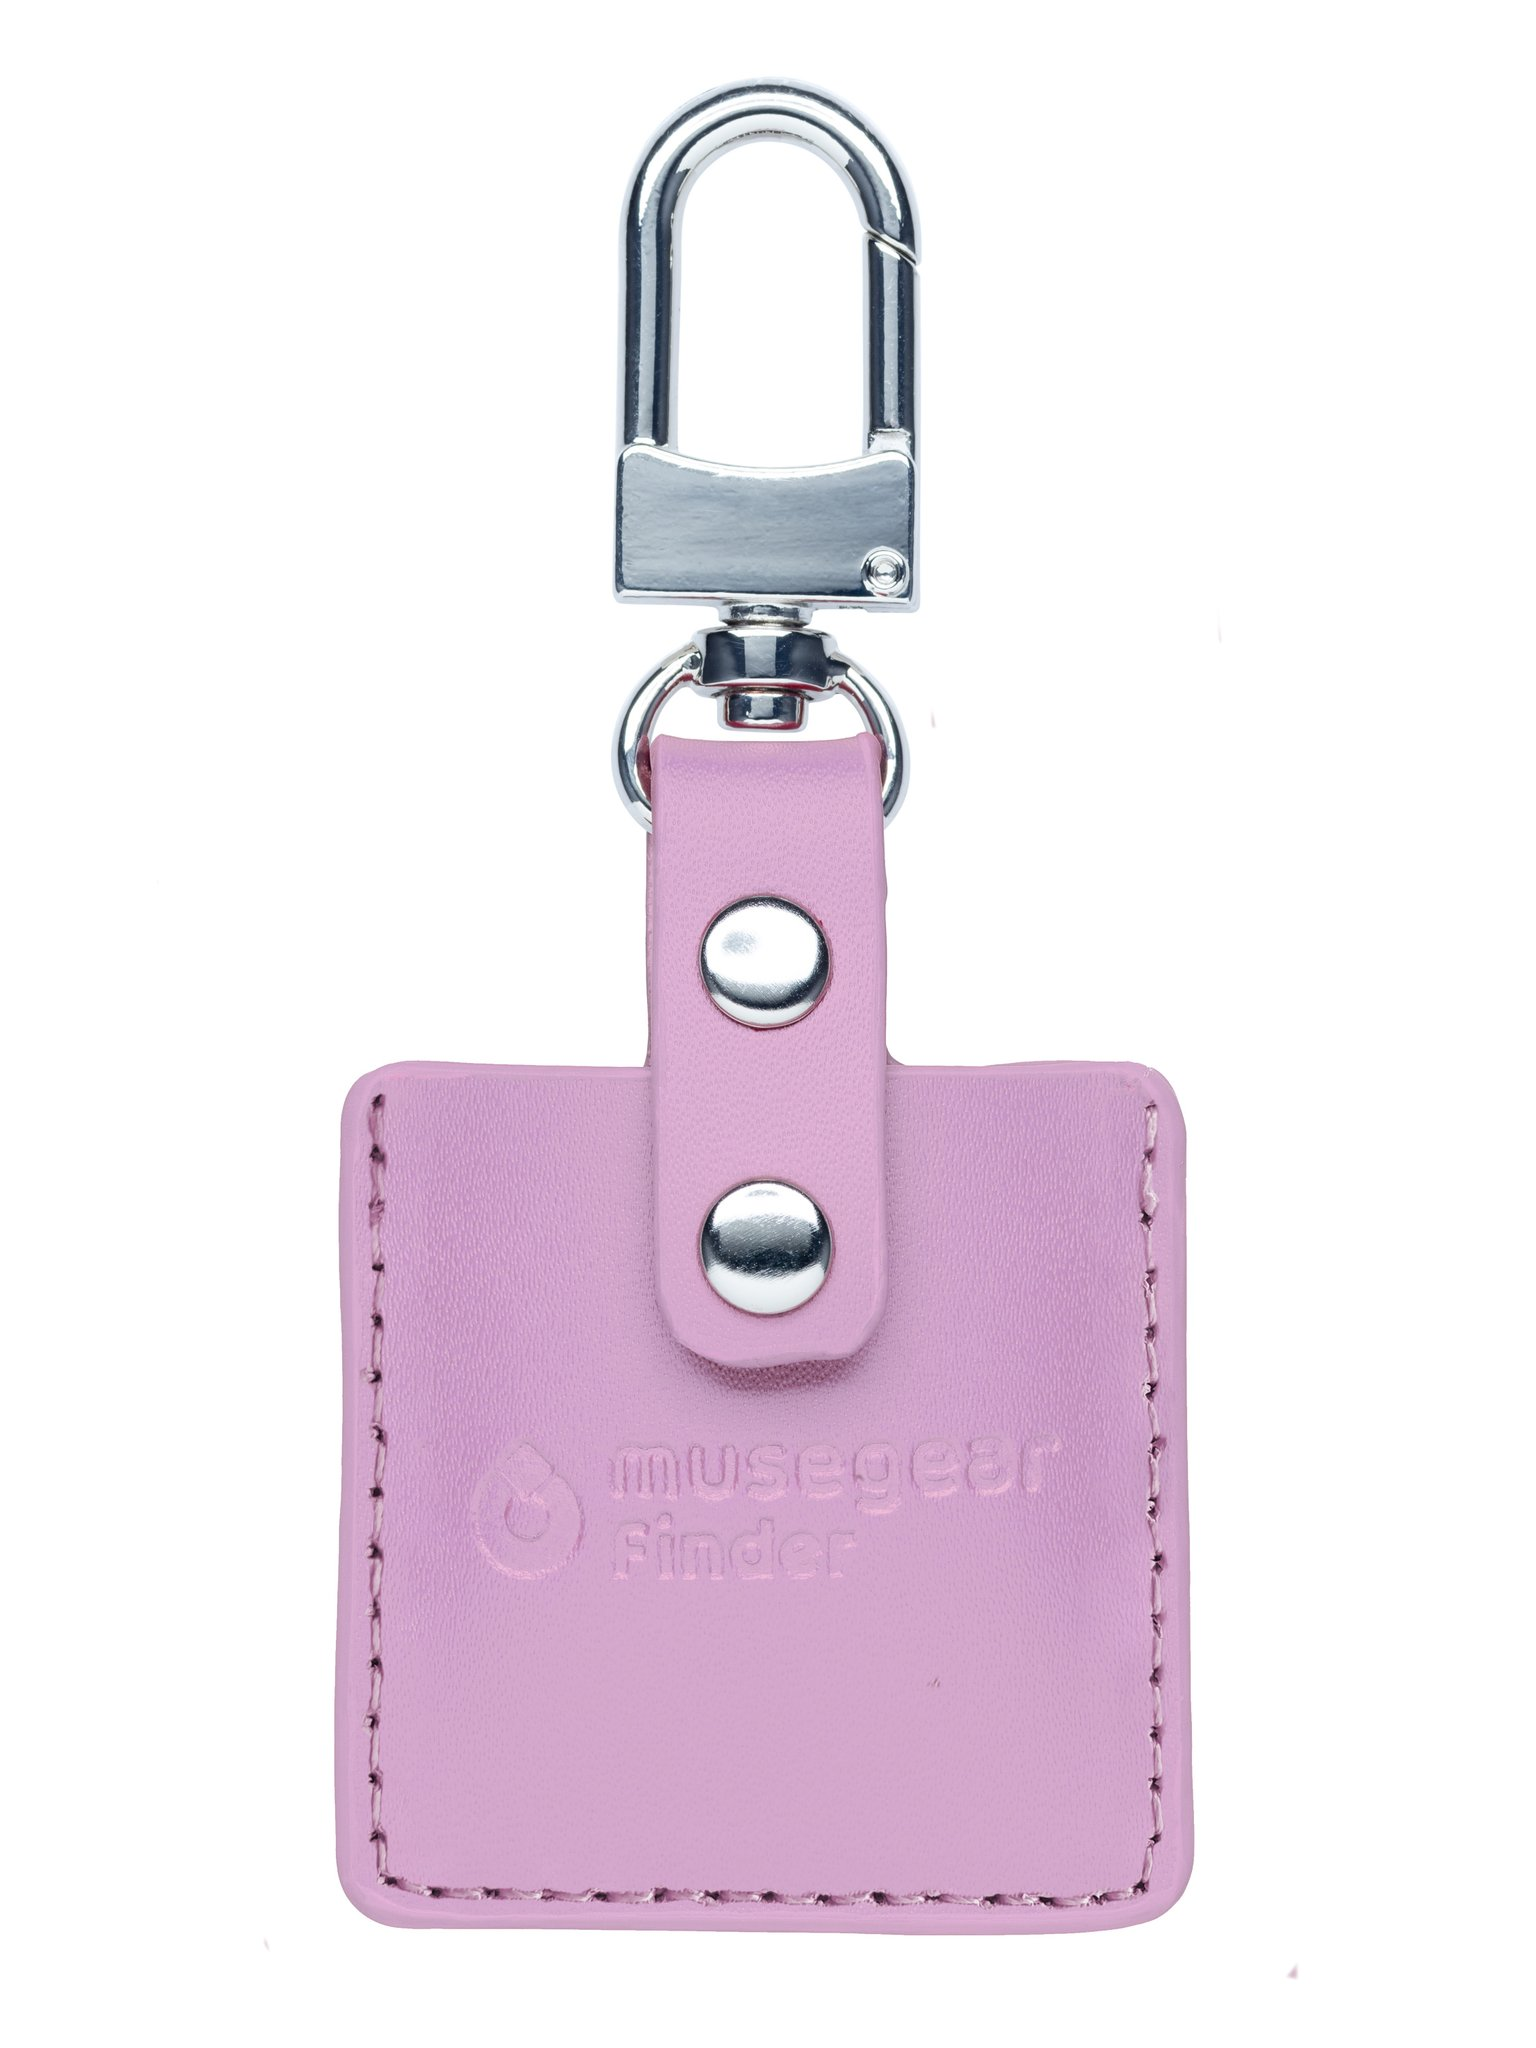 MUSEGEAR Schlüsselfinder mit Bluetooth Bluetooth Deutschland App Schlüsselfinder aus